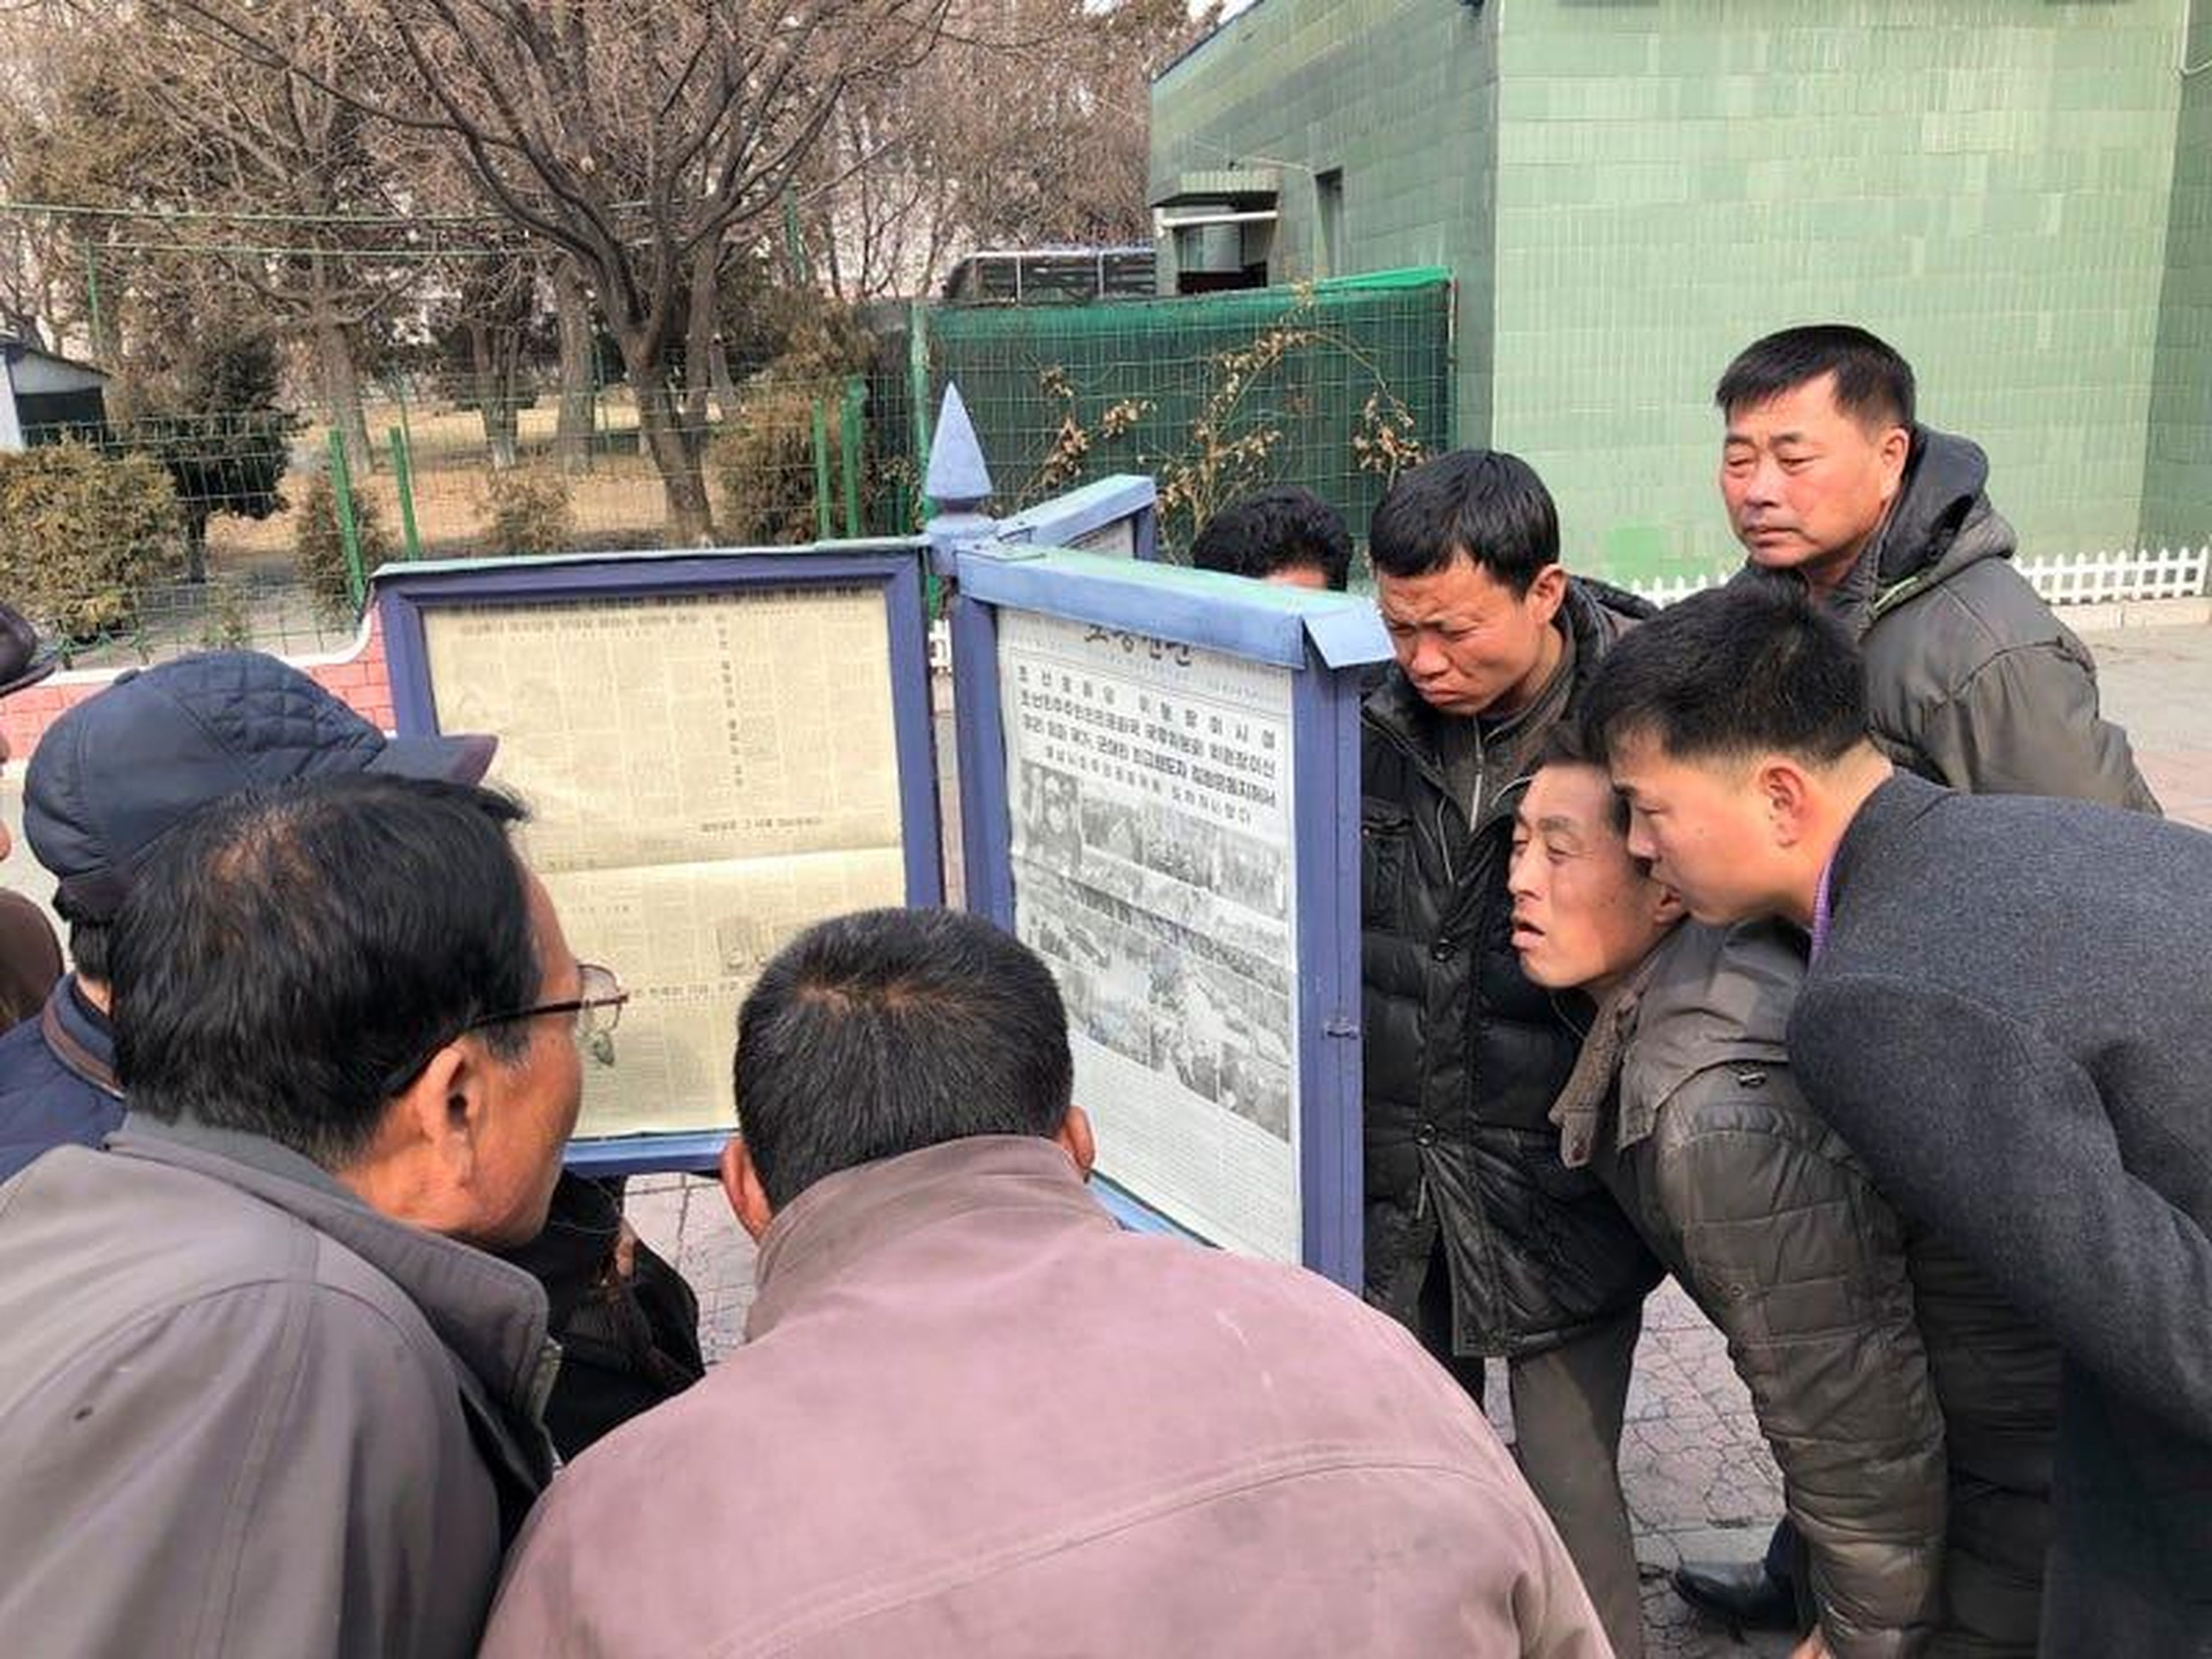 Los hombres se reúnen alrededor de las publicaciones del periódico público para leer sobre la visita del líder norcoreano Kim Jong Un a Vietnam.